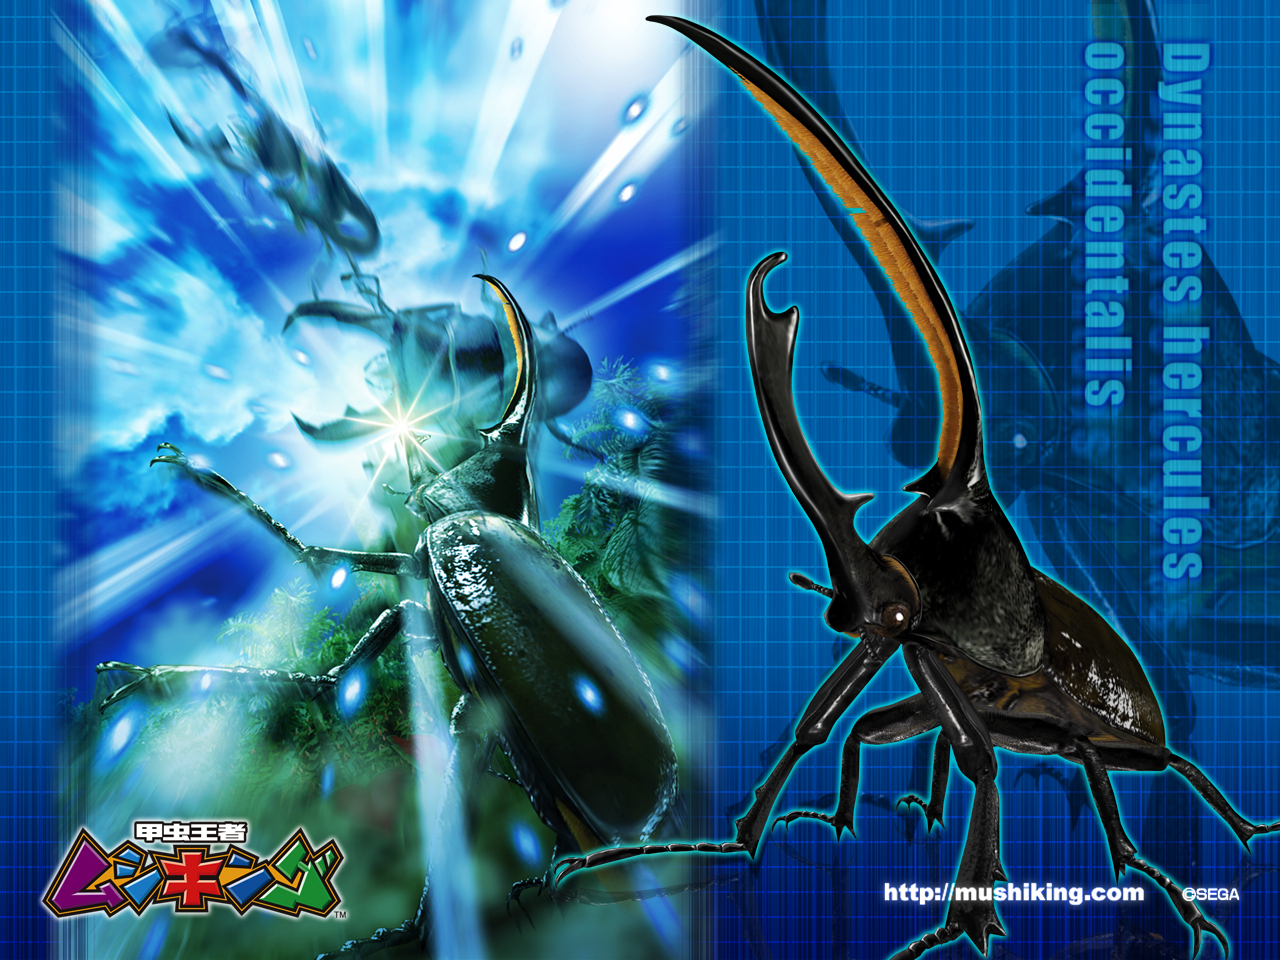 甲虫王者ムシキング 公式ホームページ ダウンロード